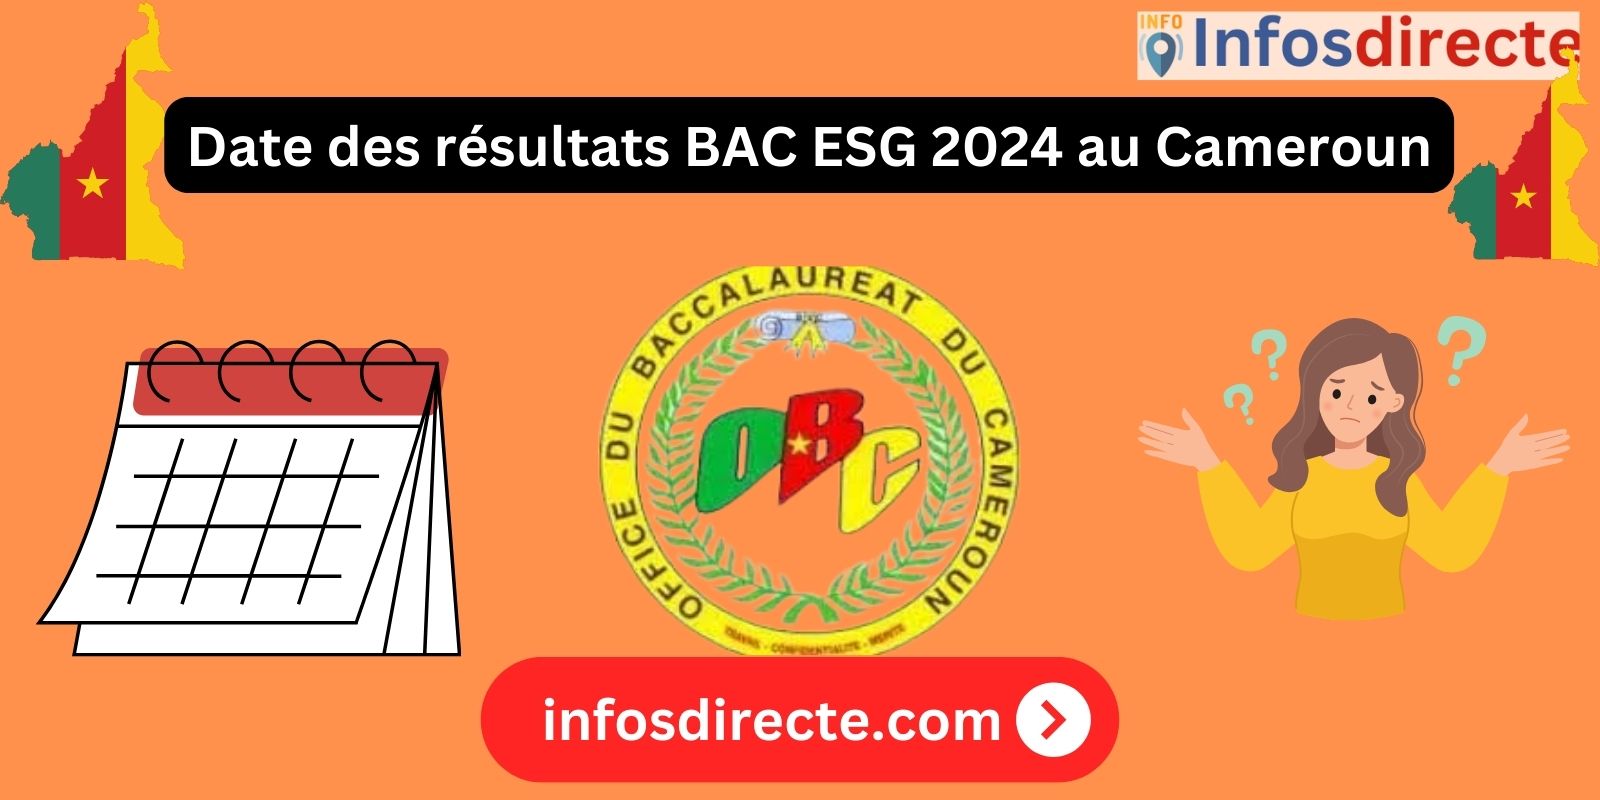 Date des résultats BAC ESG 2024 au Cameroun